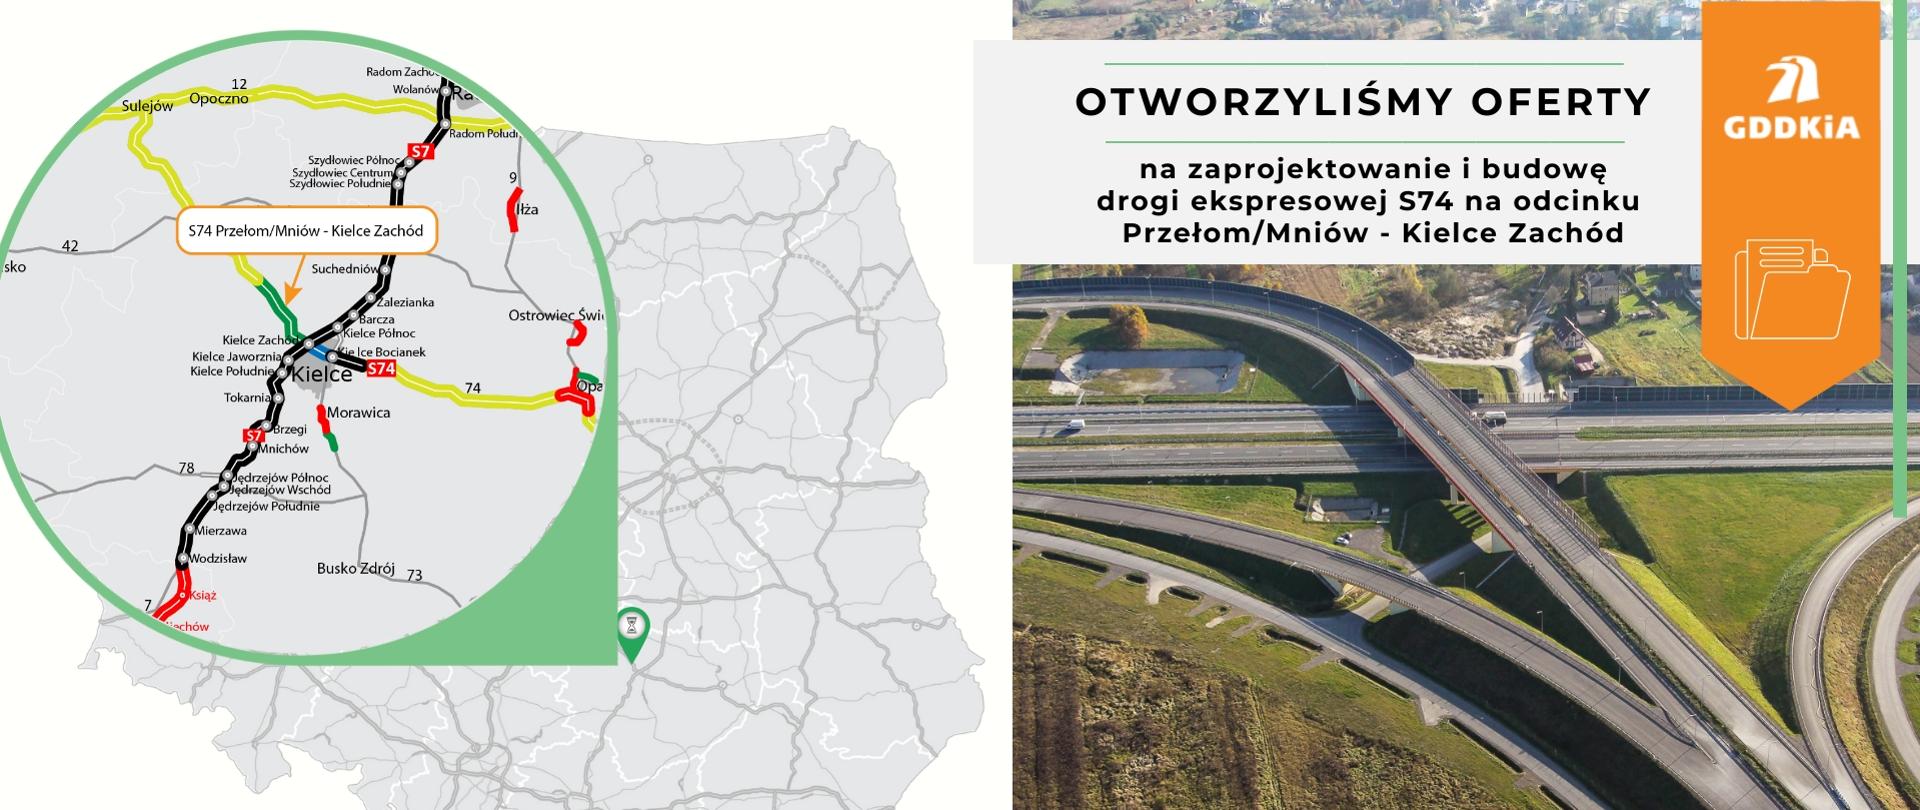 Po lewej stronie widoczna mapa Polski ze wskazanym miejscem inwestycji. Po prawej stronie węzeł drogowy Kielce Zachód.